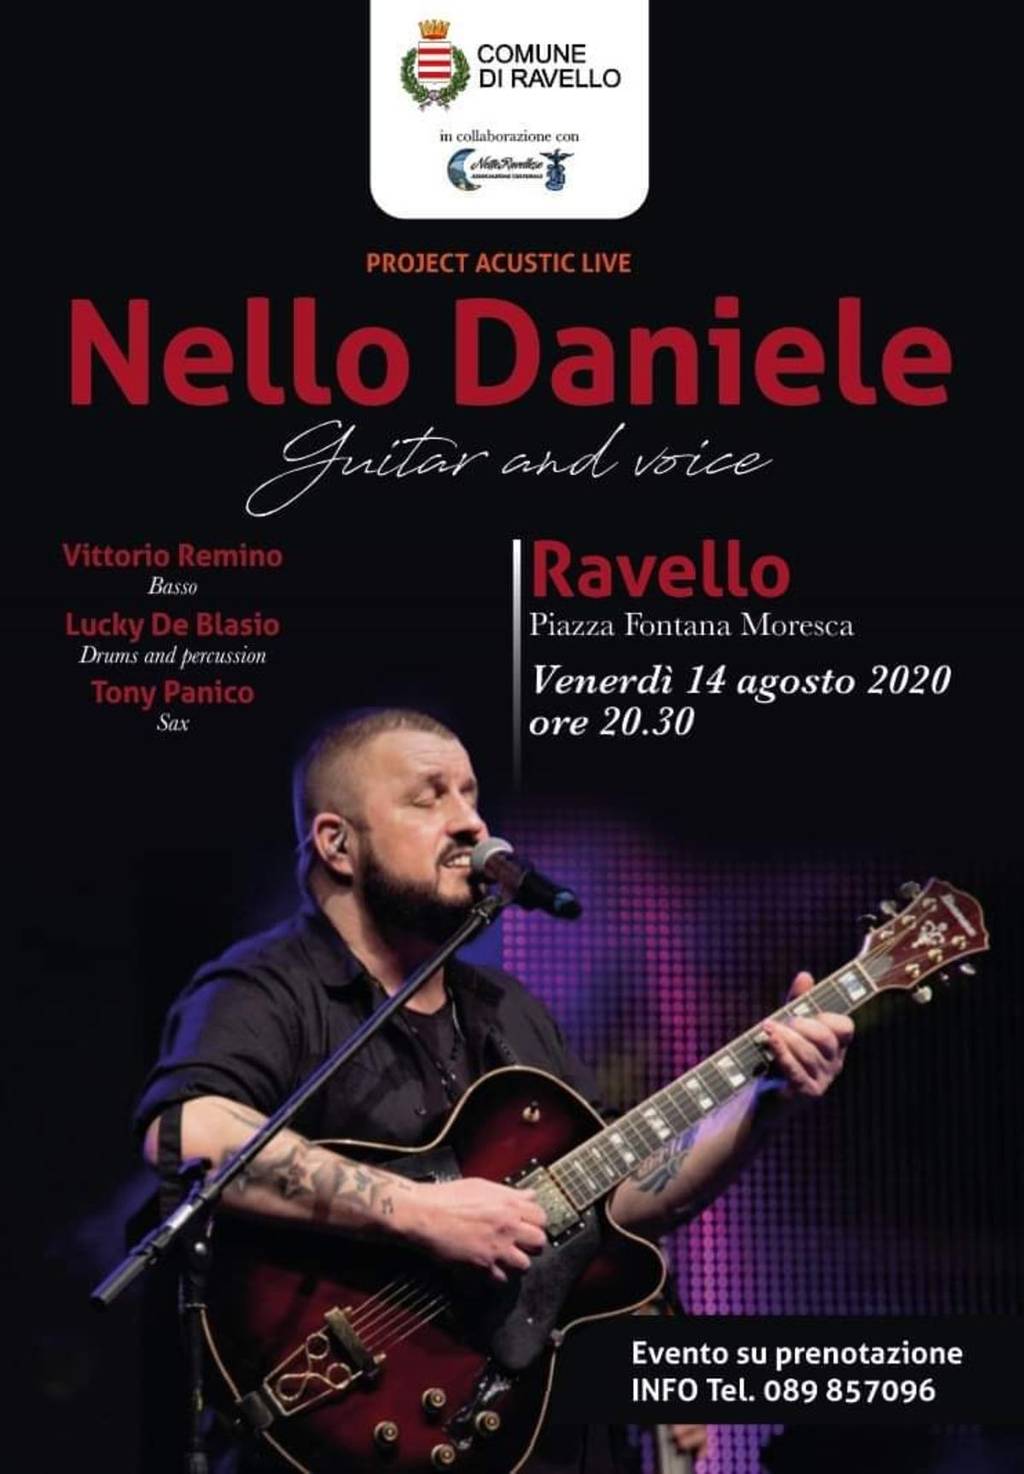 "Notte di stelle" a Ravello con la musica di Nello Daniele